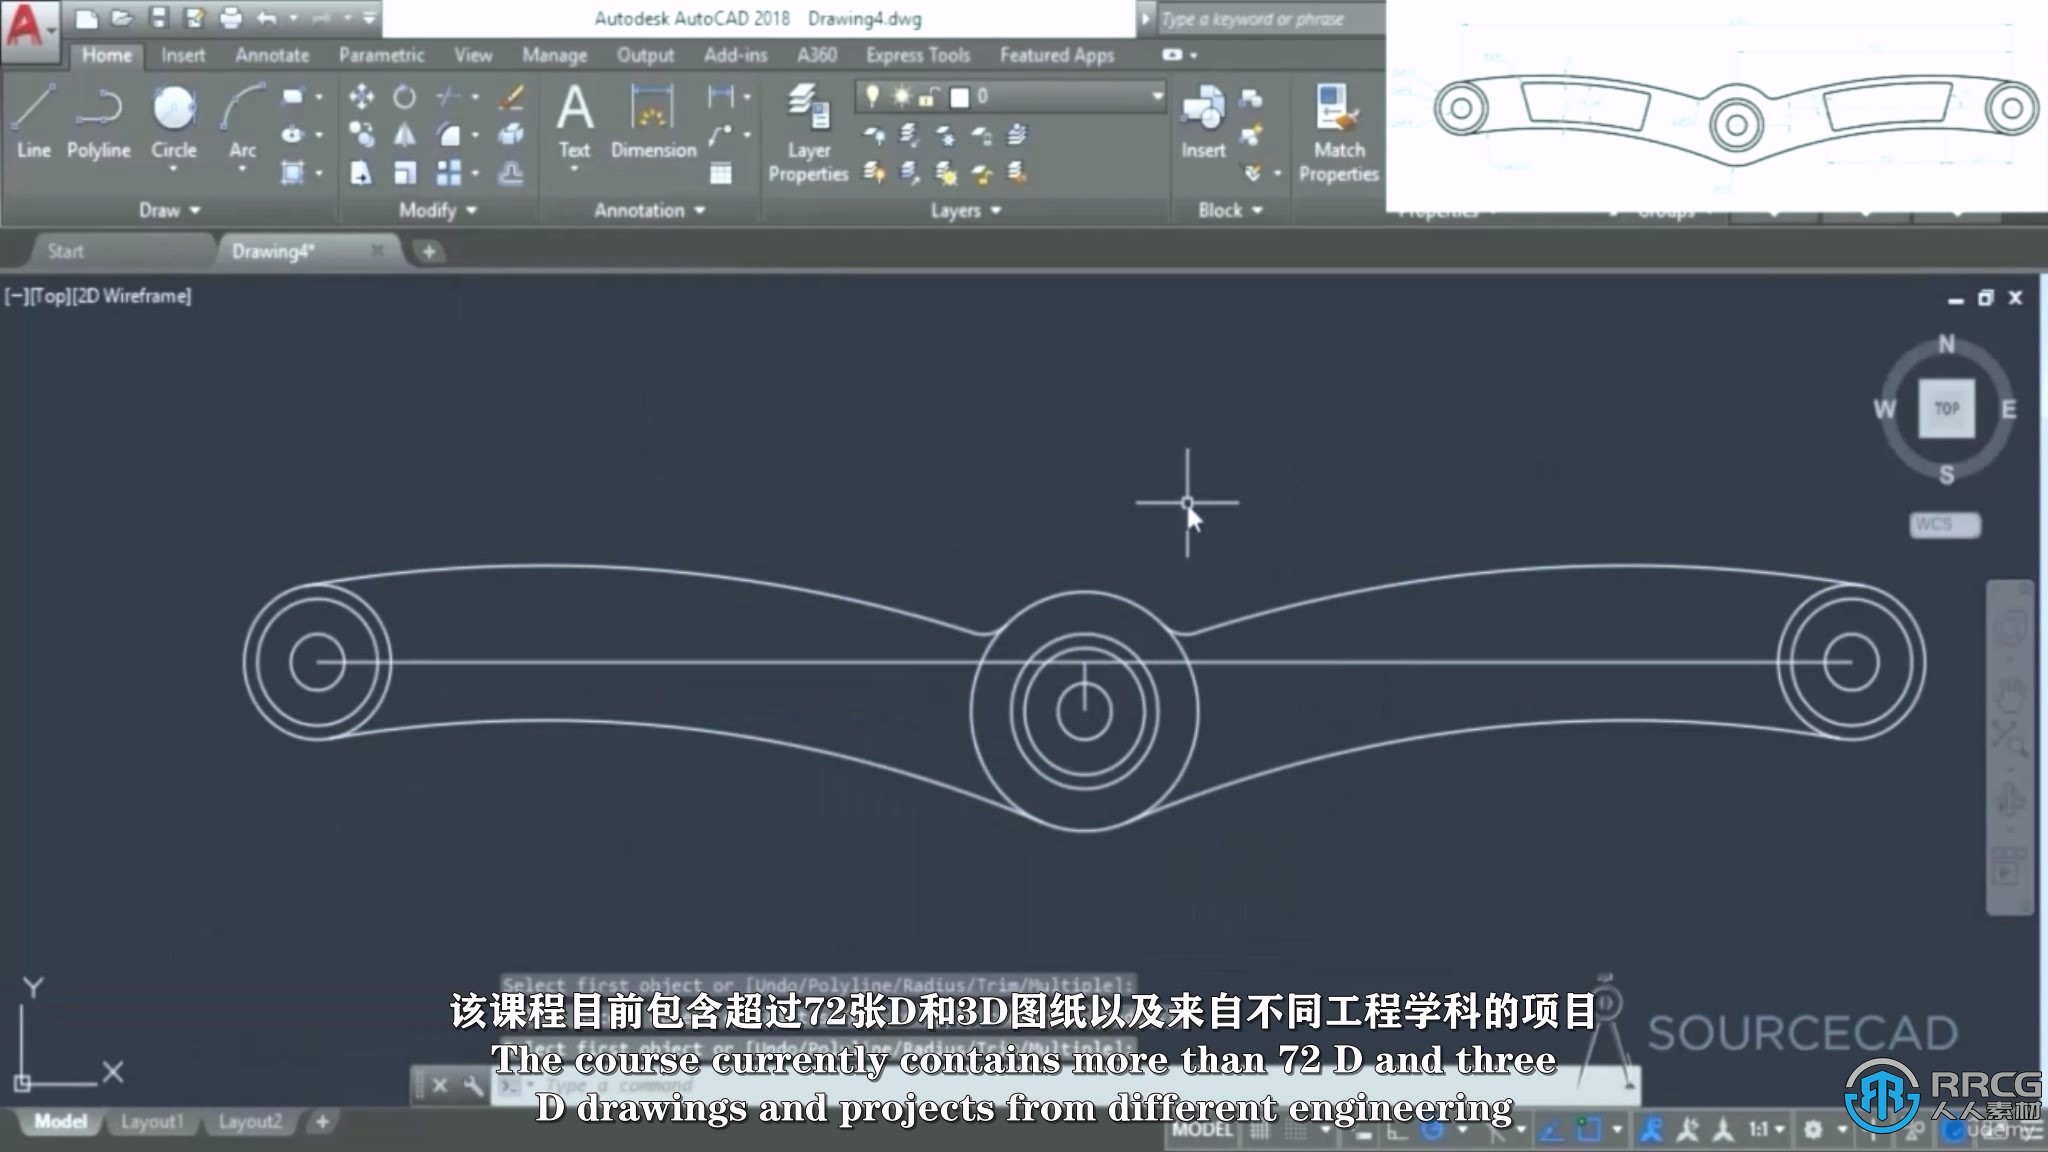 【中文字幕】AUTOCAD 2D与3D图纸实际项目训练视频教程